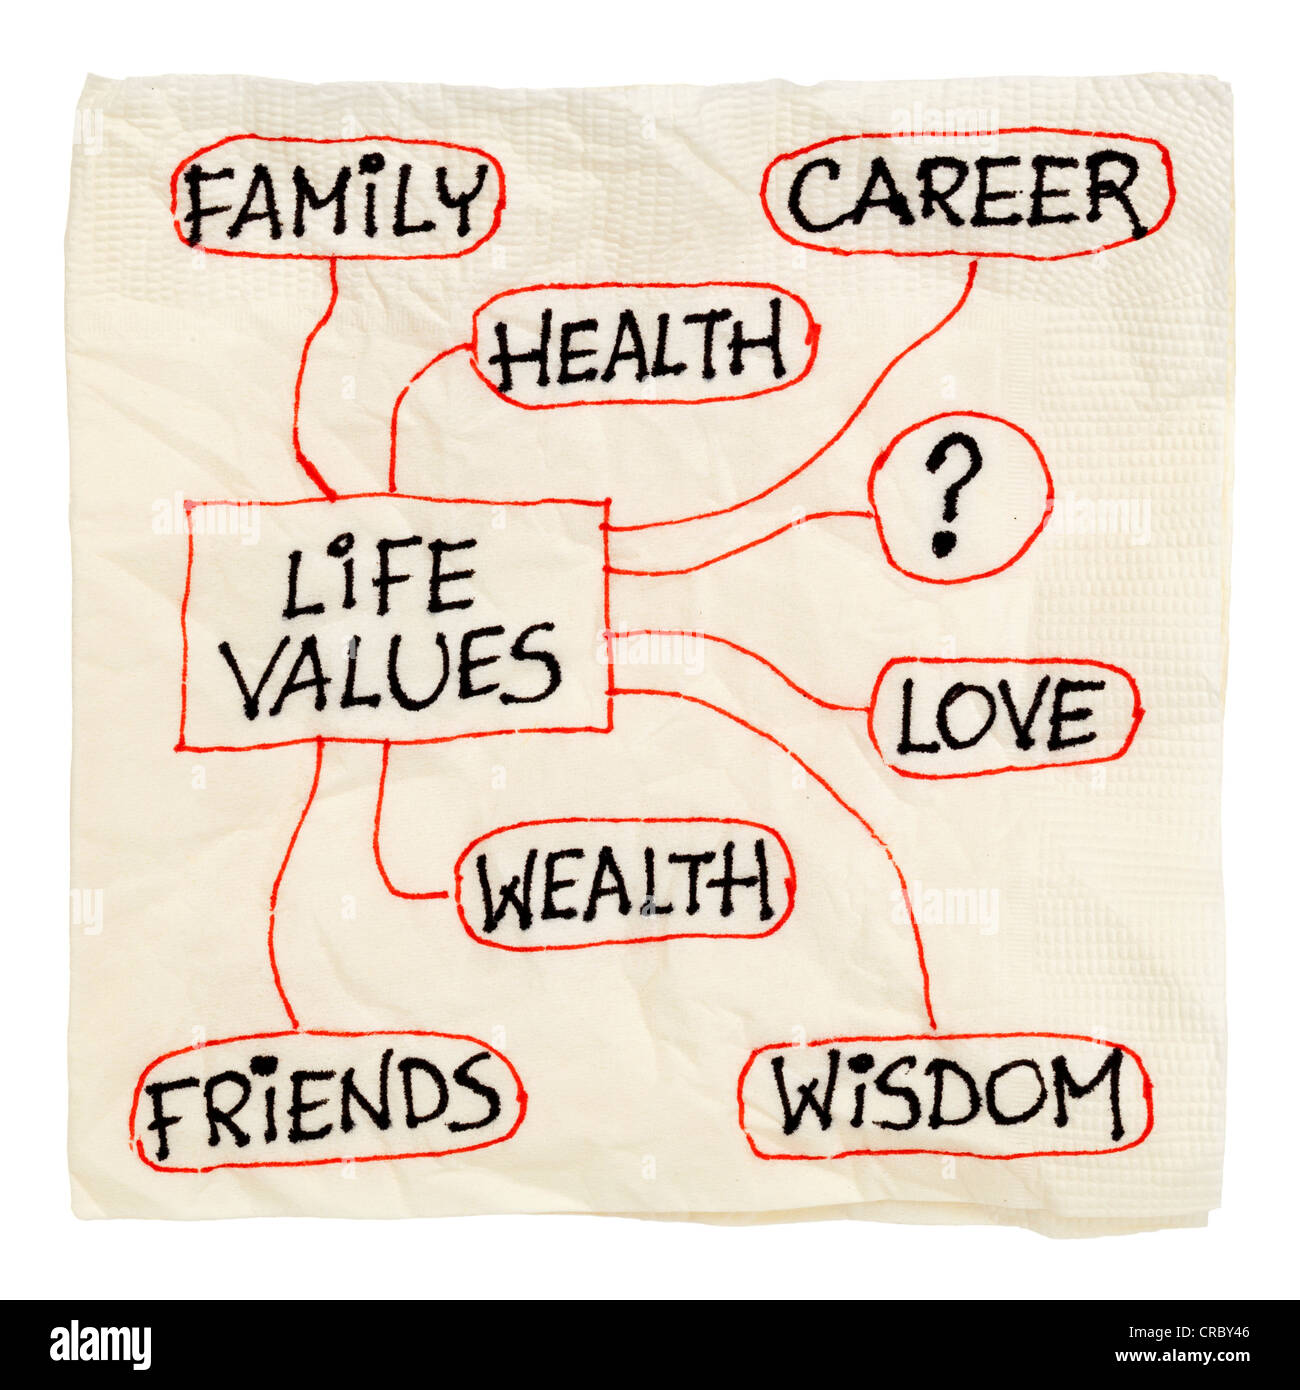 Vorentwurfsskizze möglich Leben Werte - Karriere, Familie, Reichtum, Liebe, Freunde, Gesundheit, Weisheit, isoliert auf weiss Stockfoto